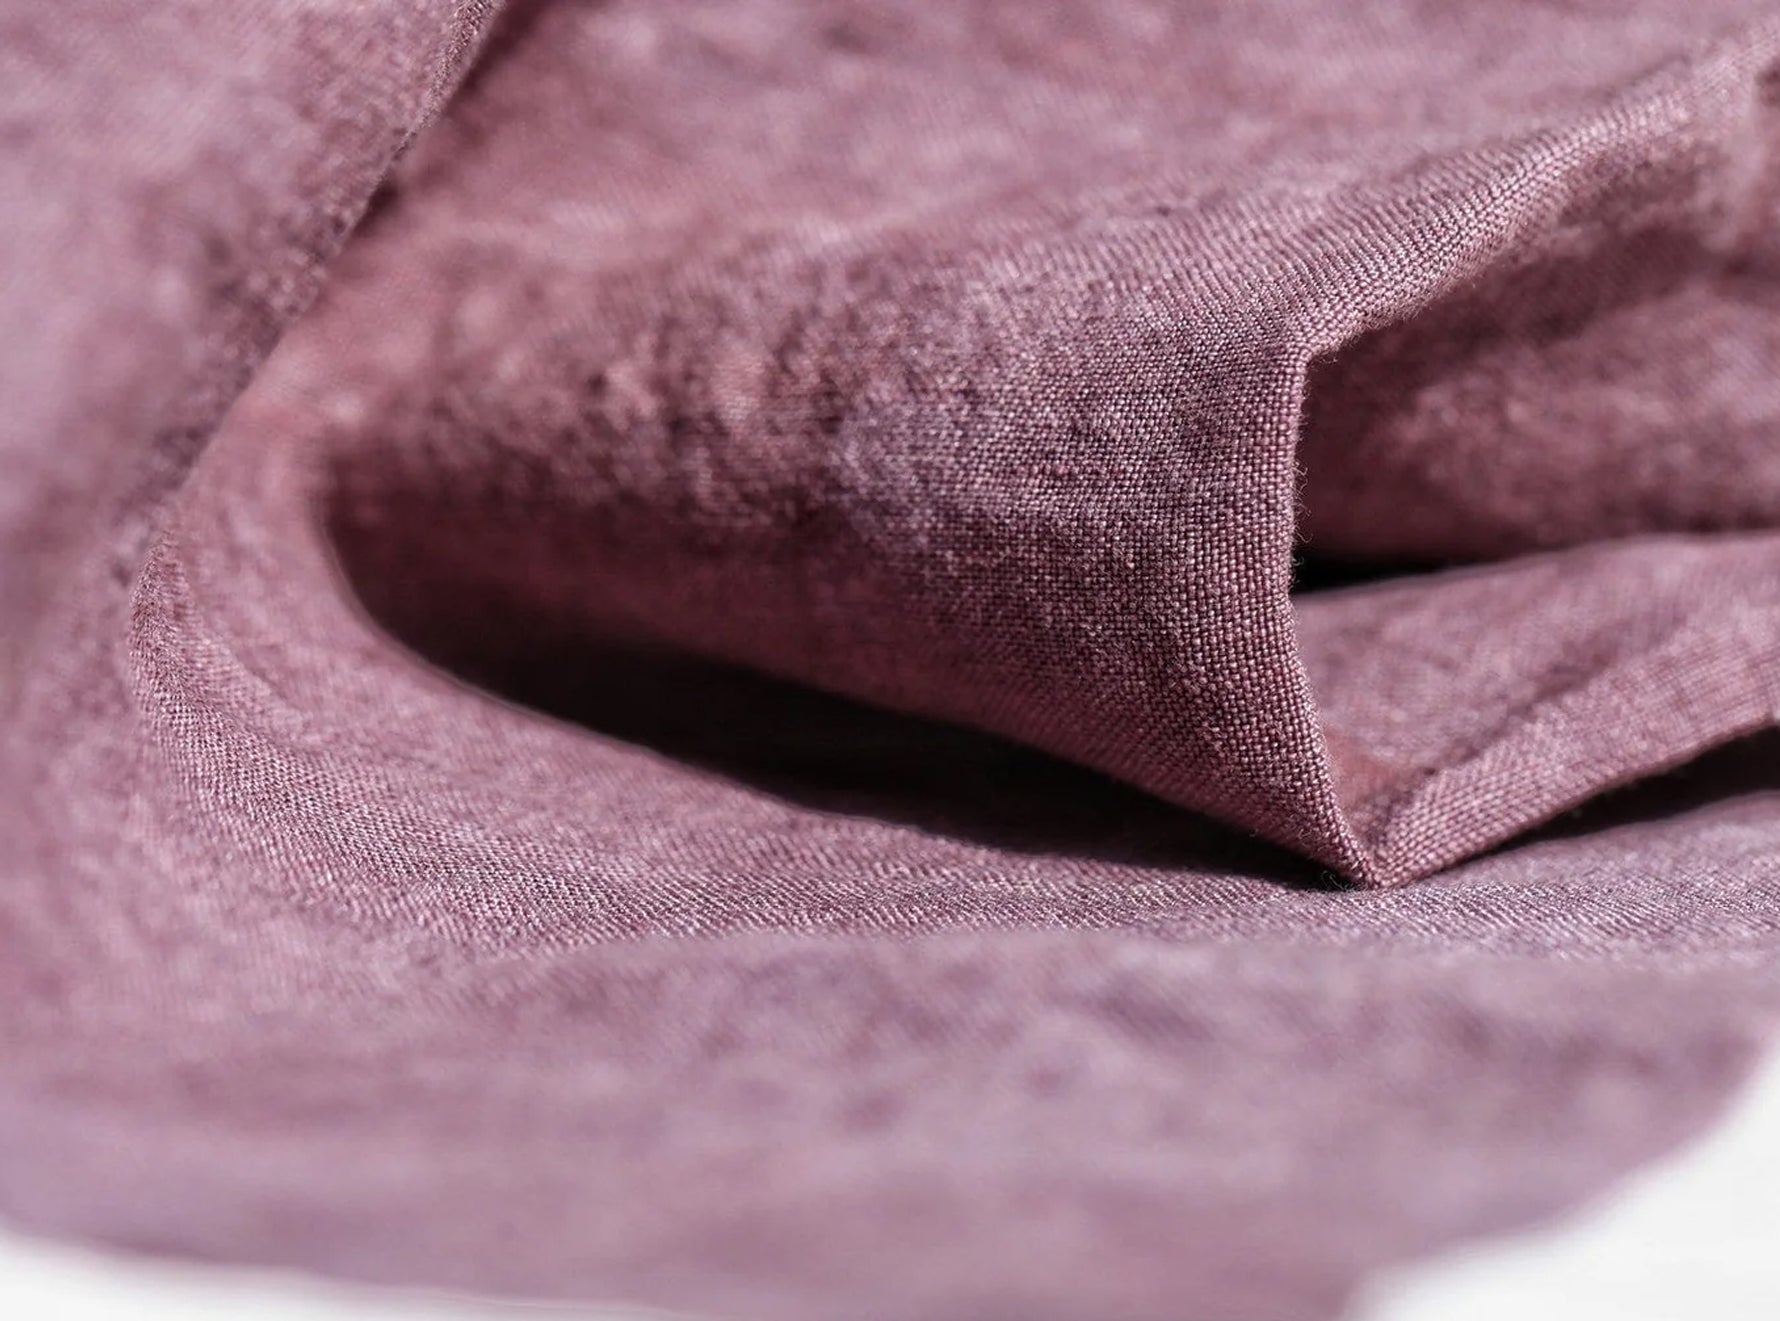 Full Field Linen Tablecloth in Grape Purple